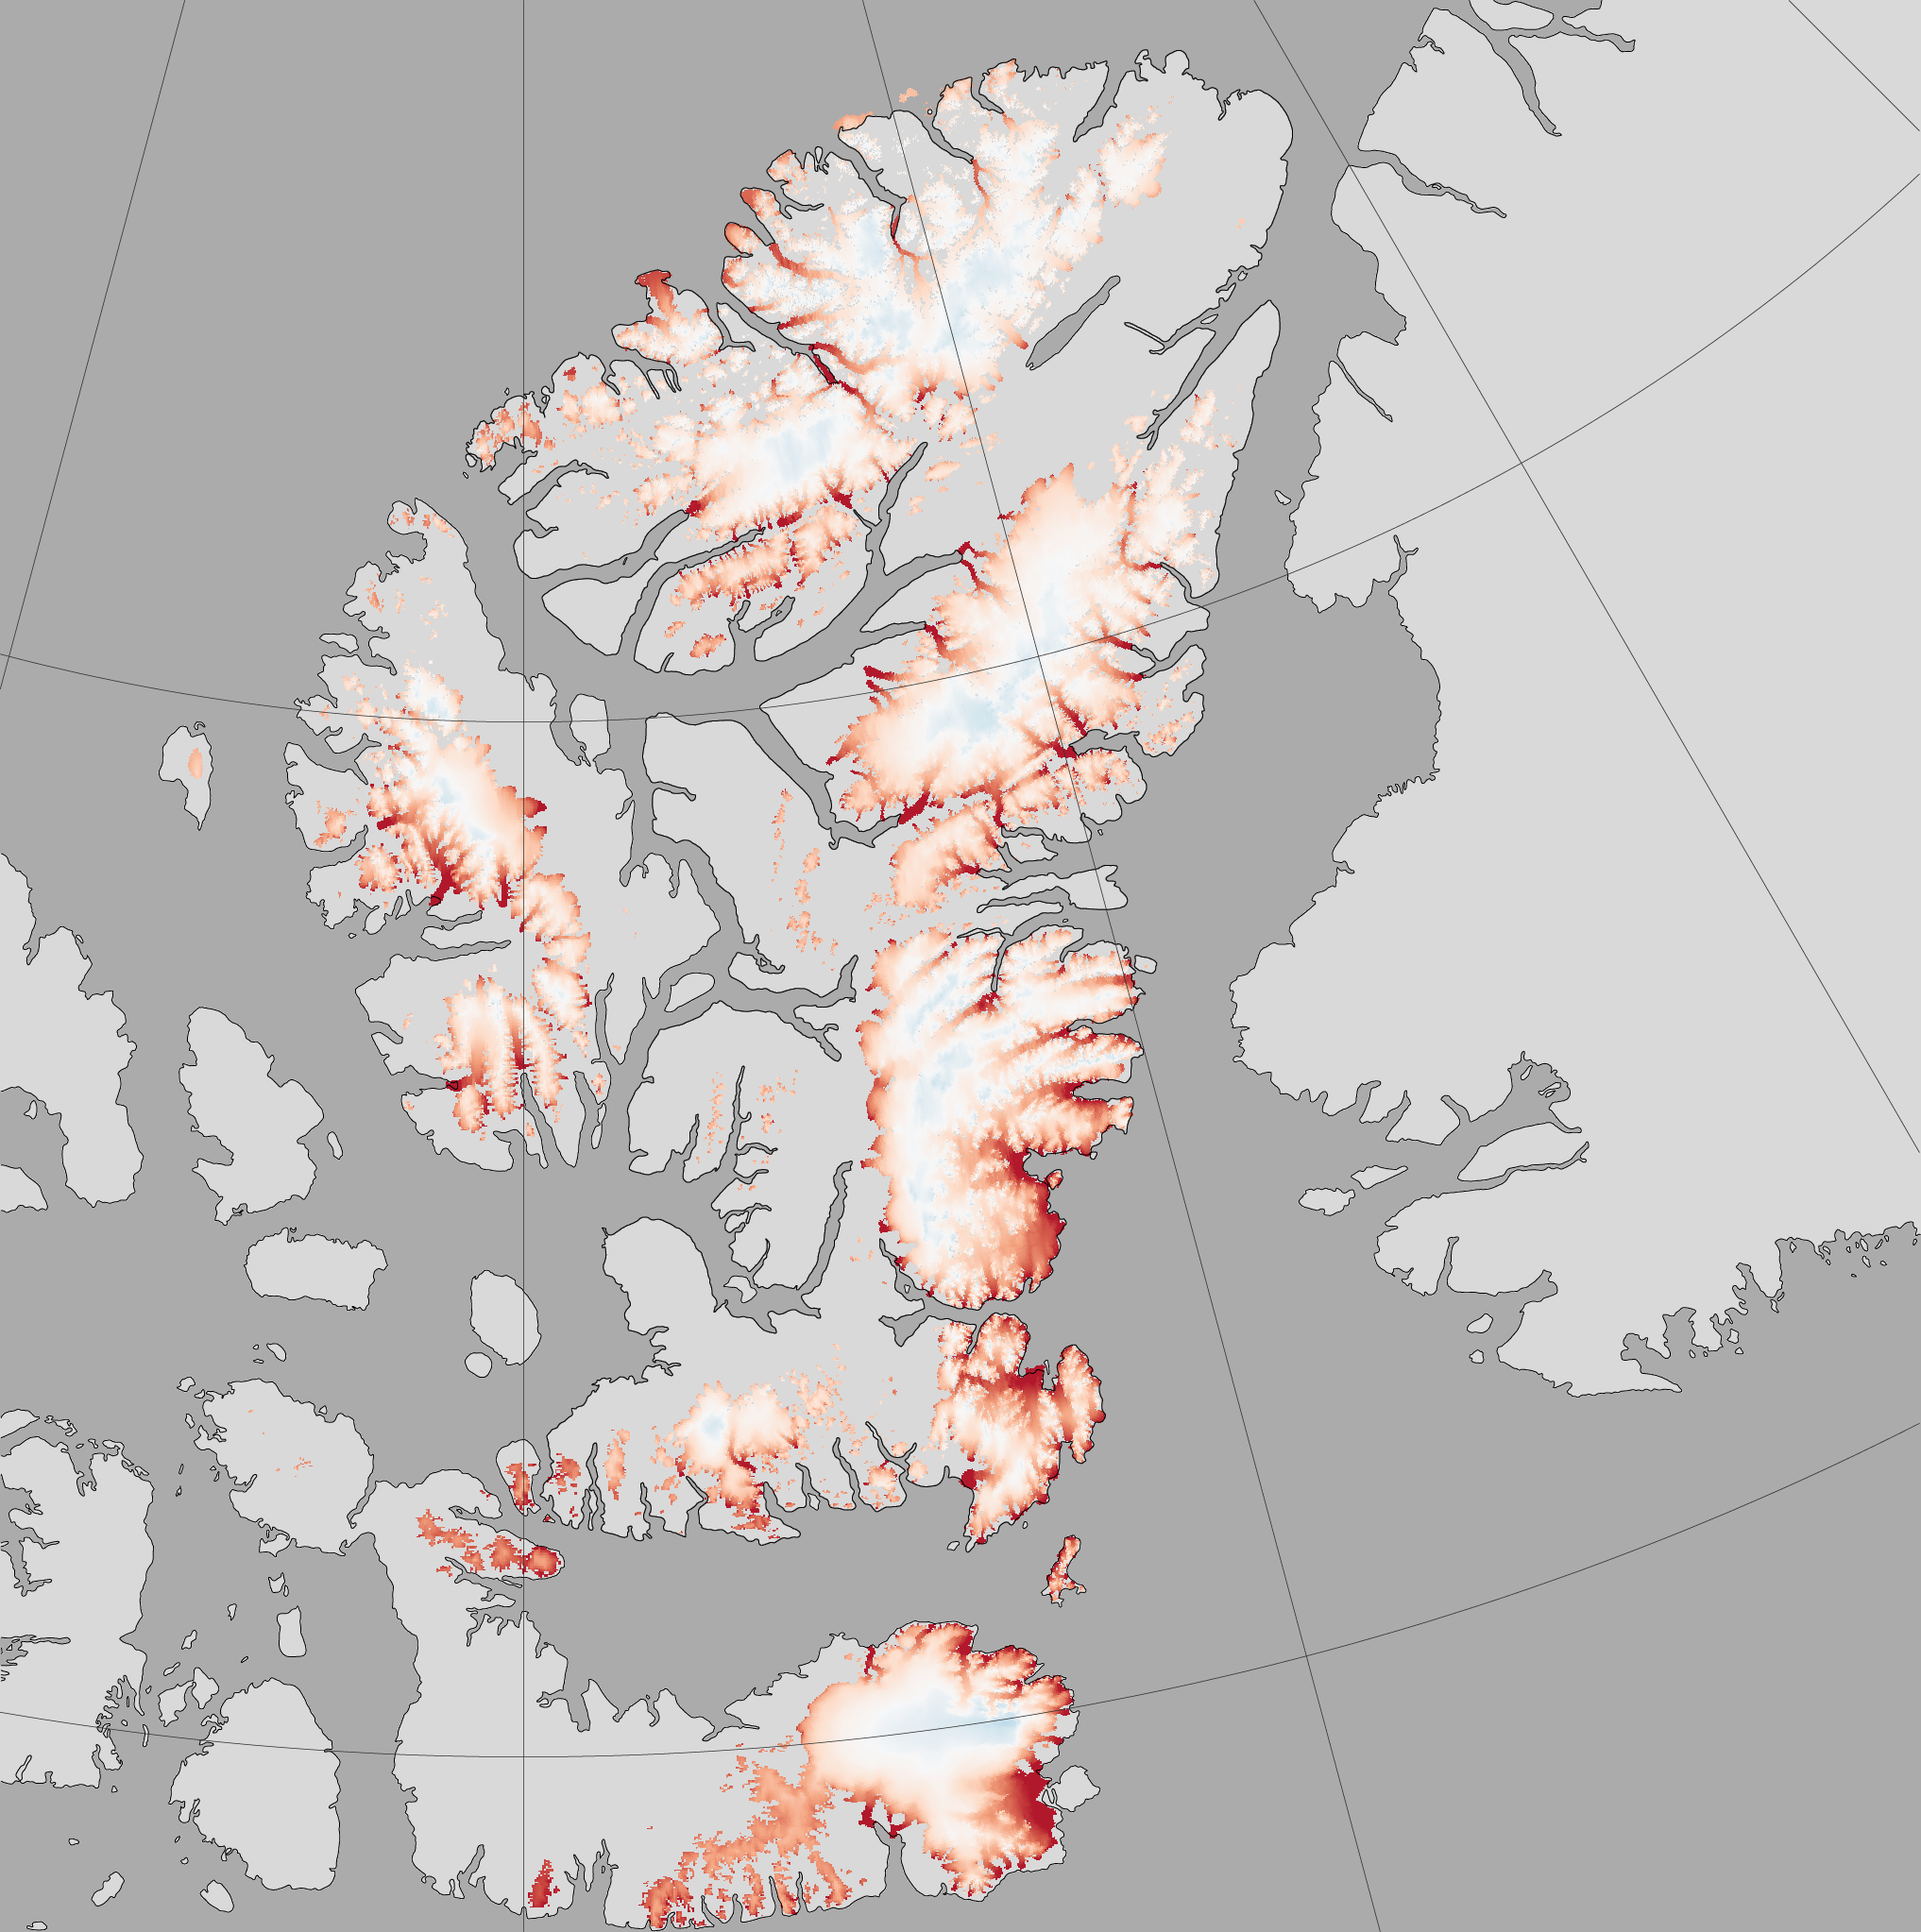 Канадский арктический архипелаг на карте северной. Острова канадского арктического архипелага. Канадский Арктический архипелаг на карте. Северная Америка канадский Арктический архипелаг. Остров Элсмир канадского арктического архипелага на карте.